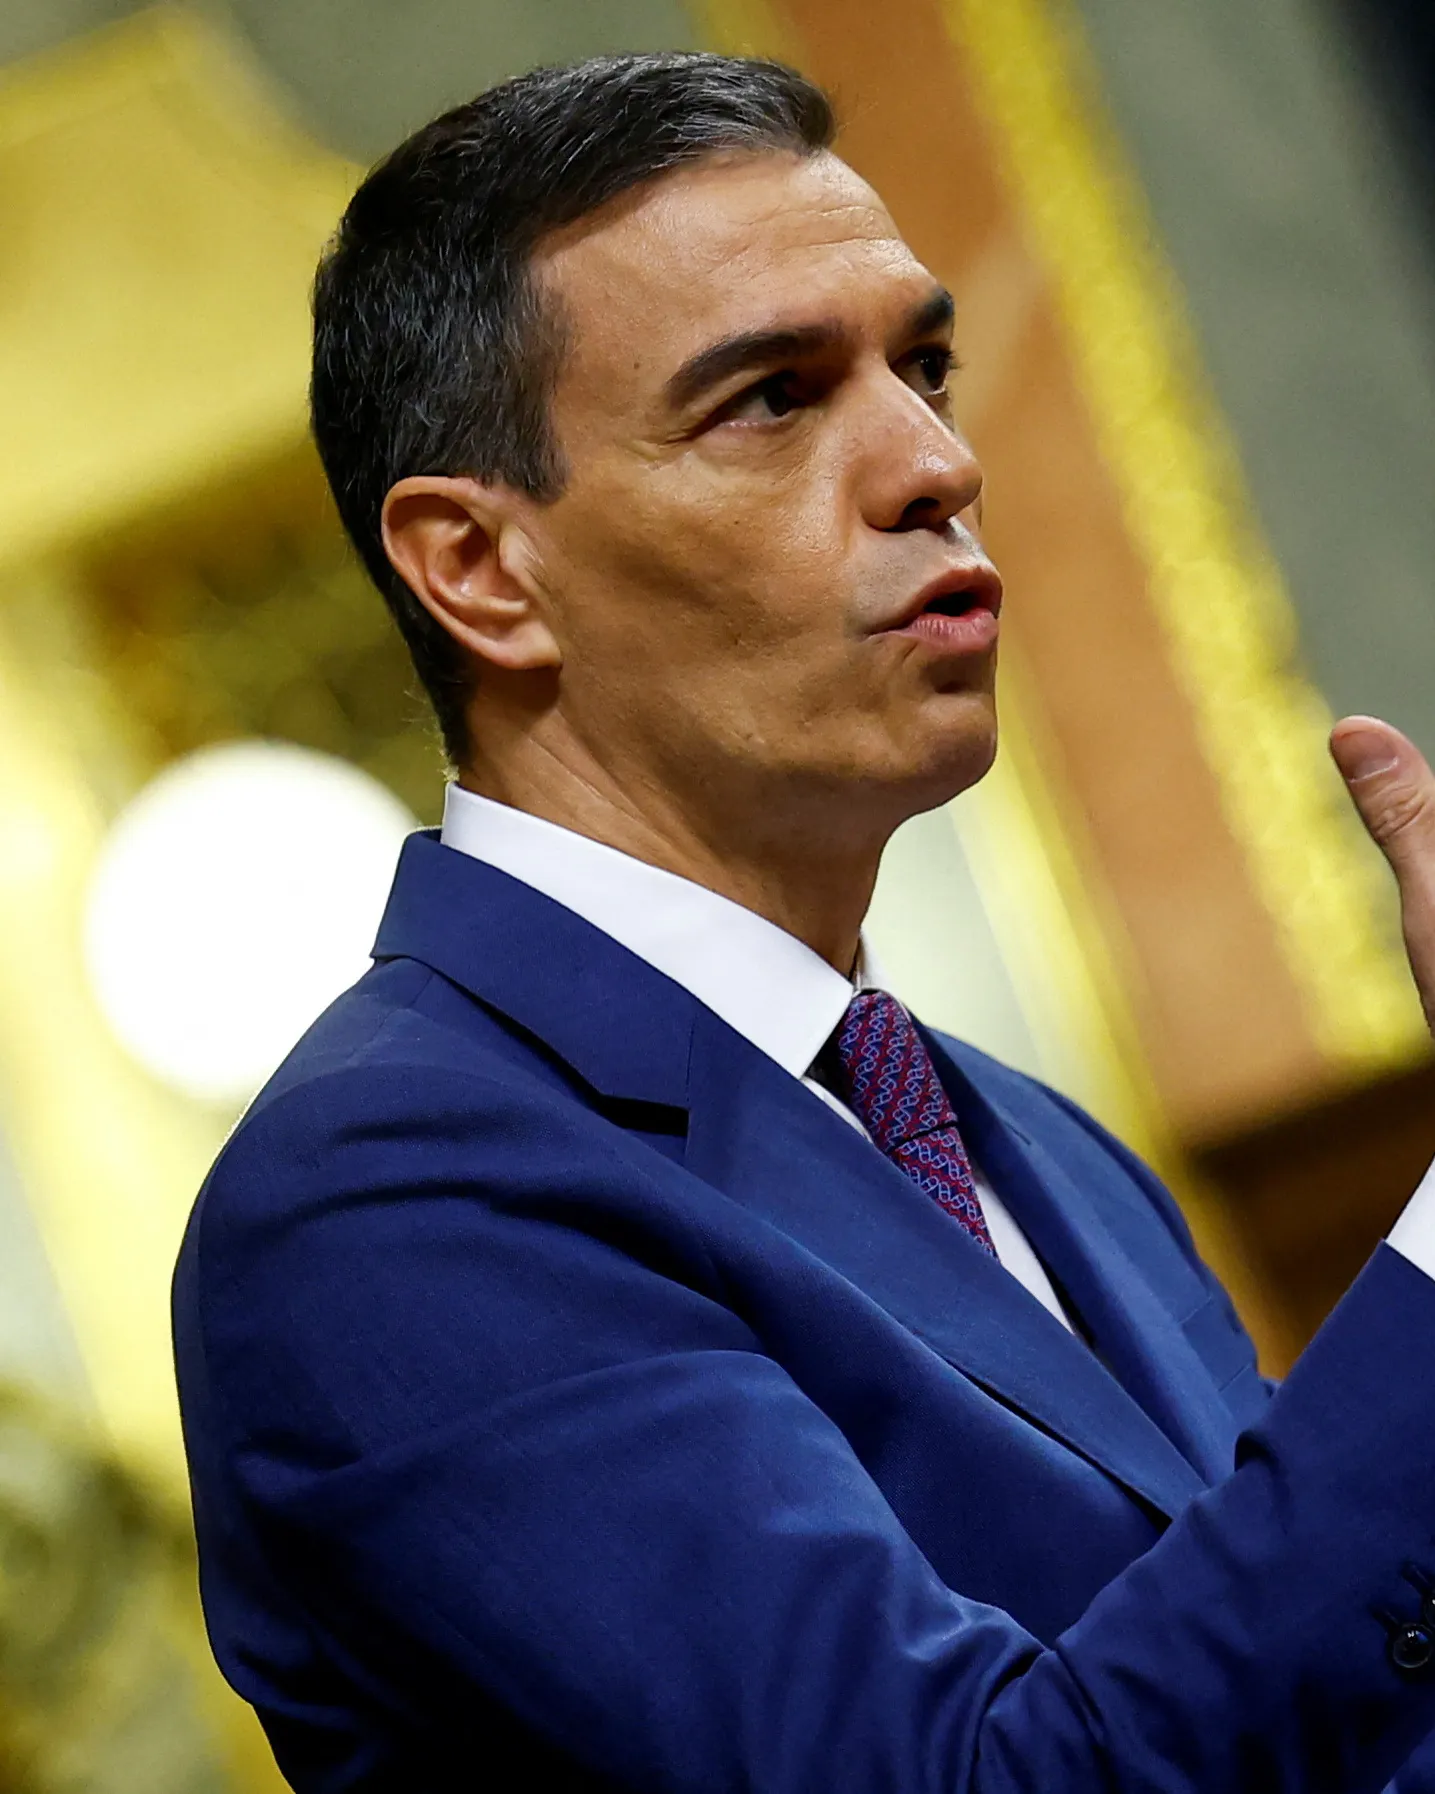 Španělský premiér Sánchez pozastavil výkon funkce kvůli vyšetřování manželky